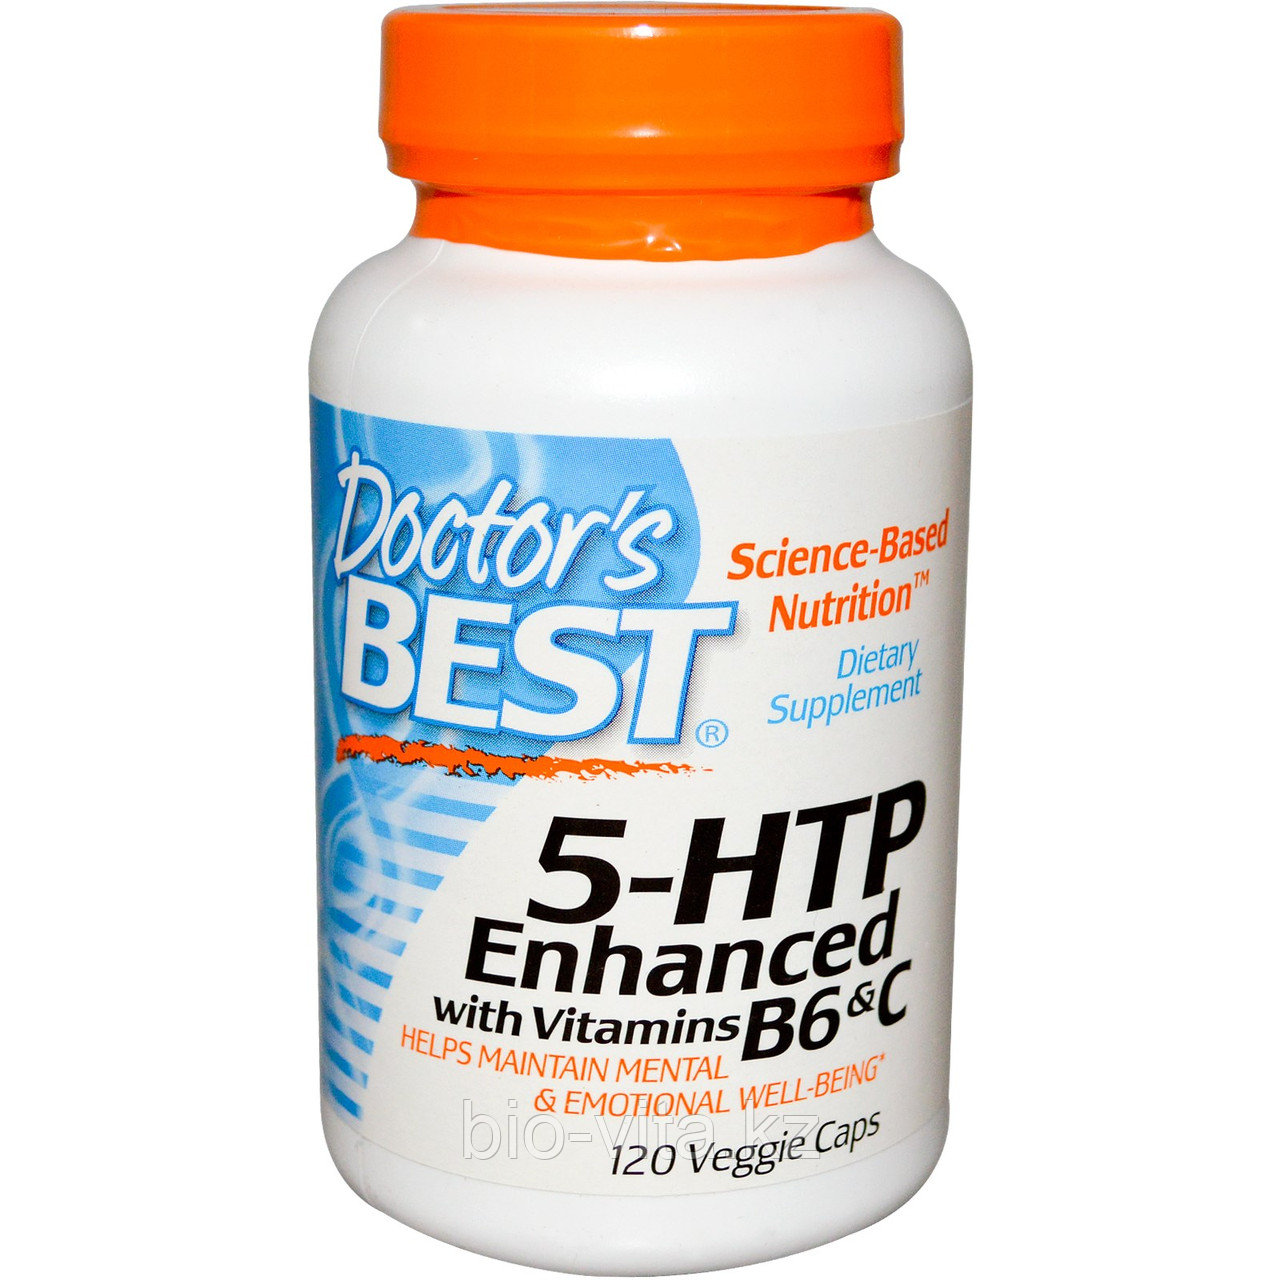 Триптофан (усиленный)5-HTP, усиленный витаминами B6 и C, 120 капсул. Doctor's Best